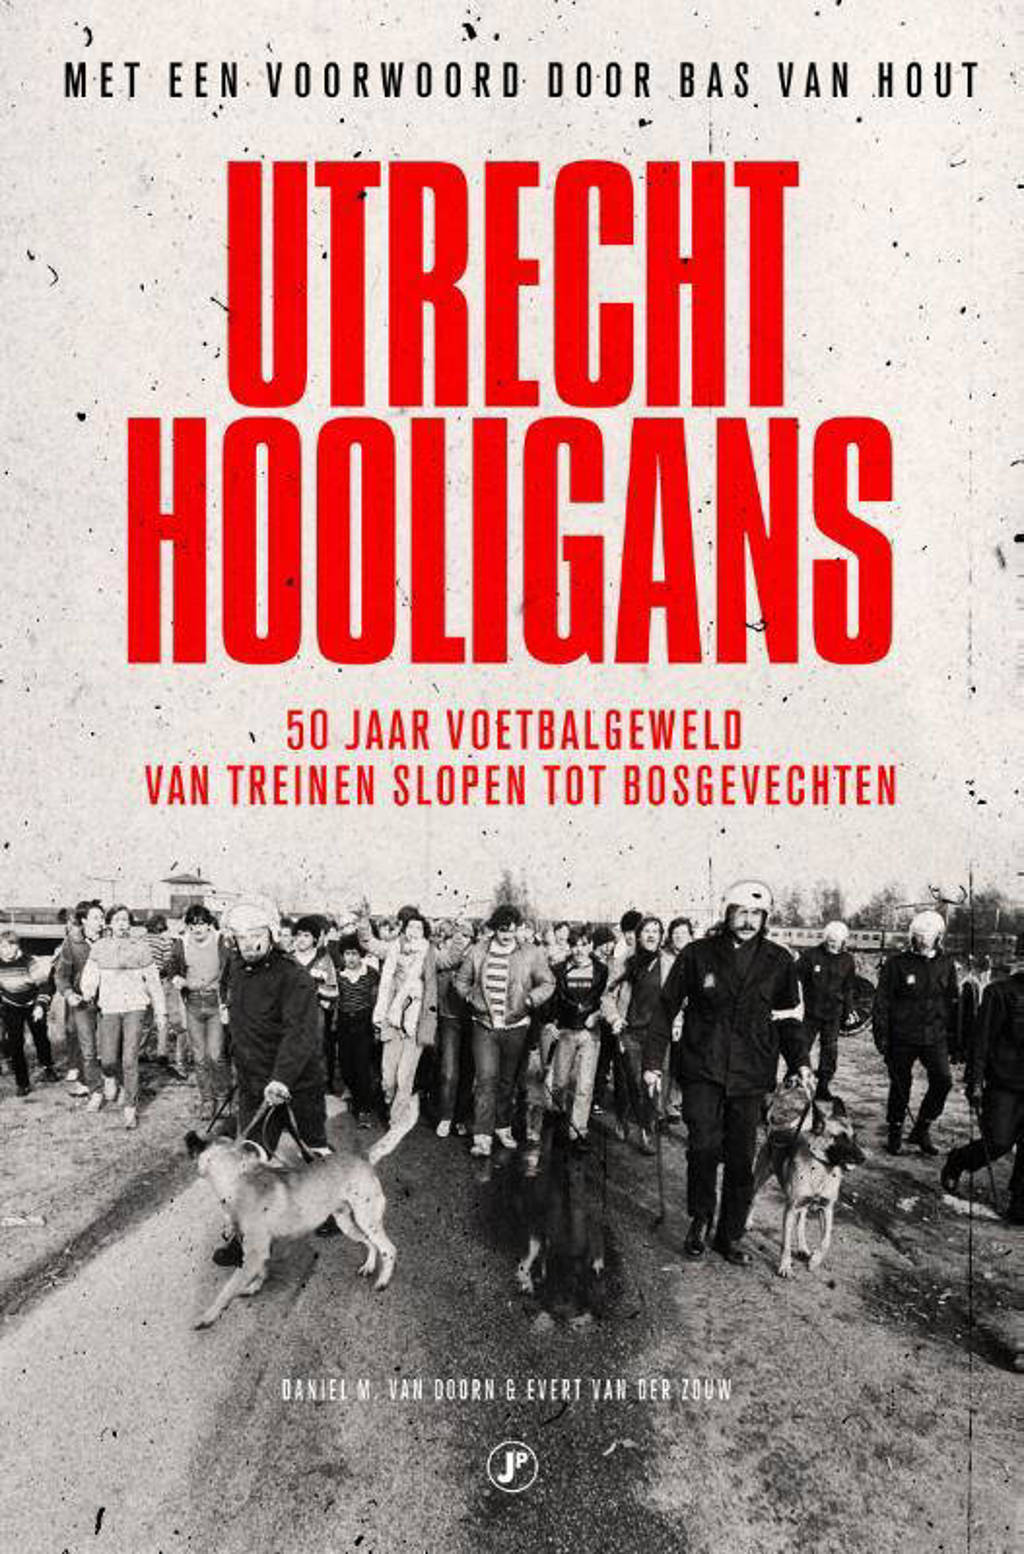 Utrecht Hooligans - Daniel M. van Doorn en Evert van der Zouw